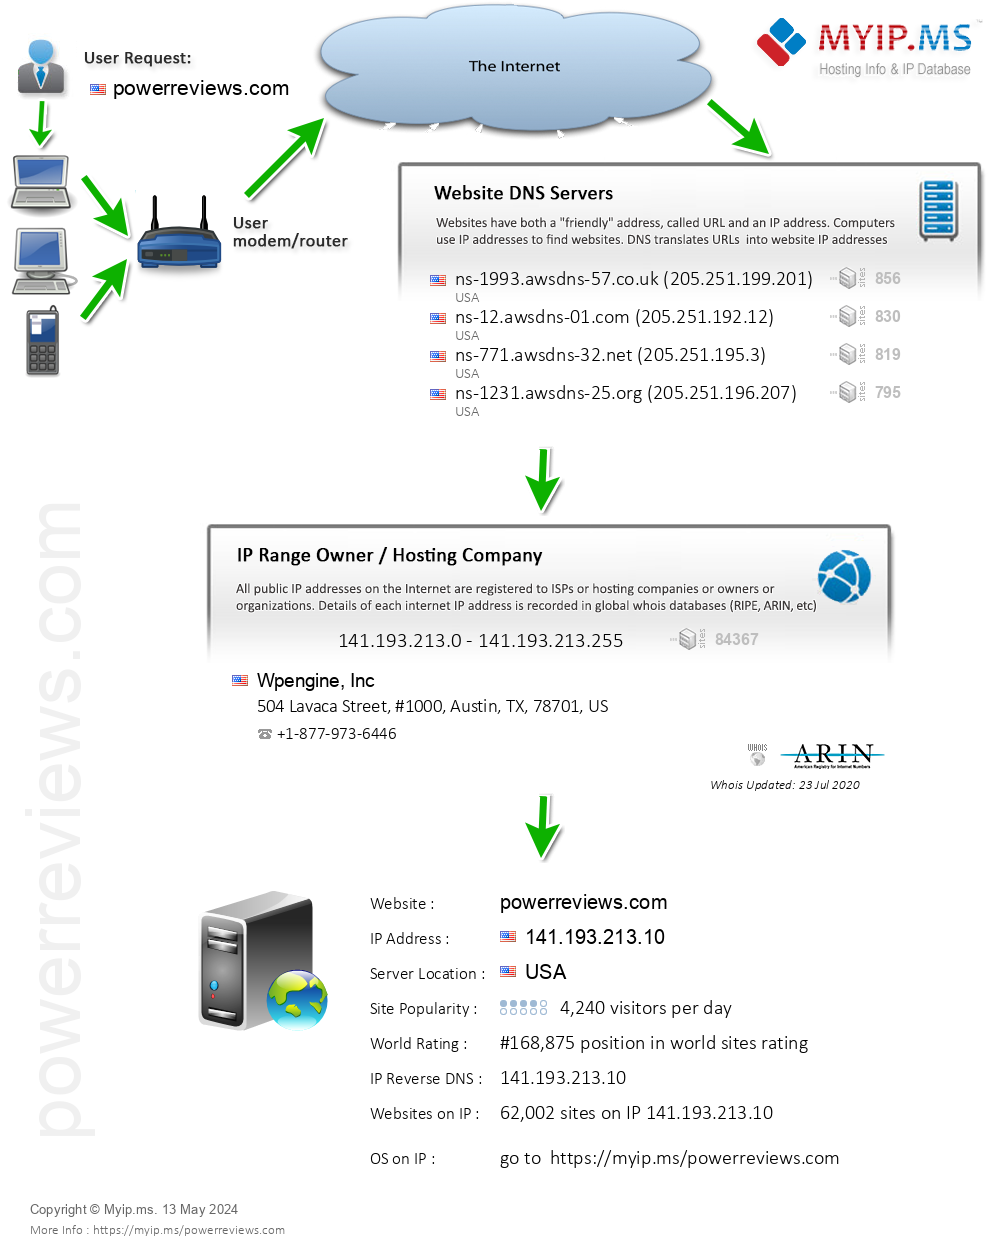 Powerreviews.com - Website Hosting Visual IP Diagram